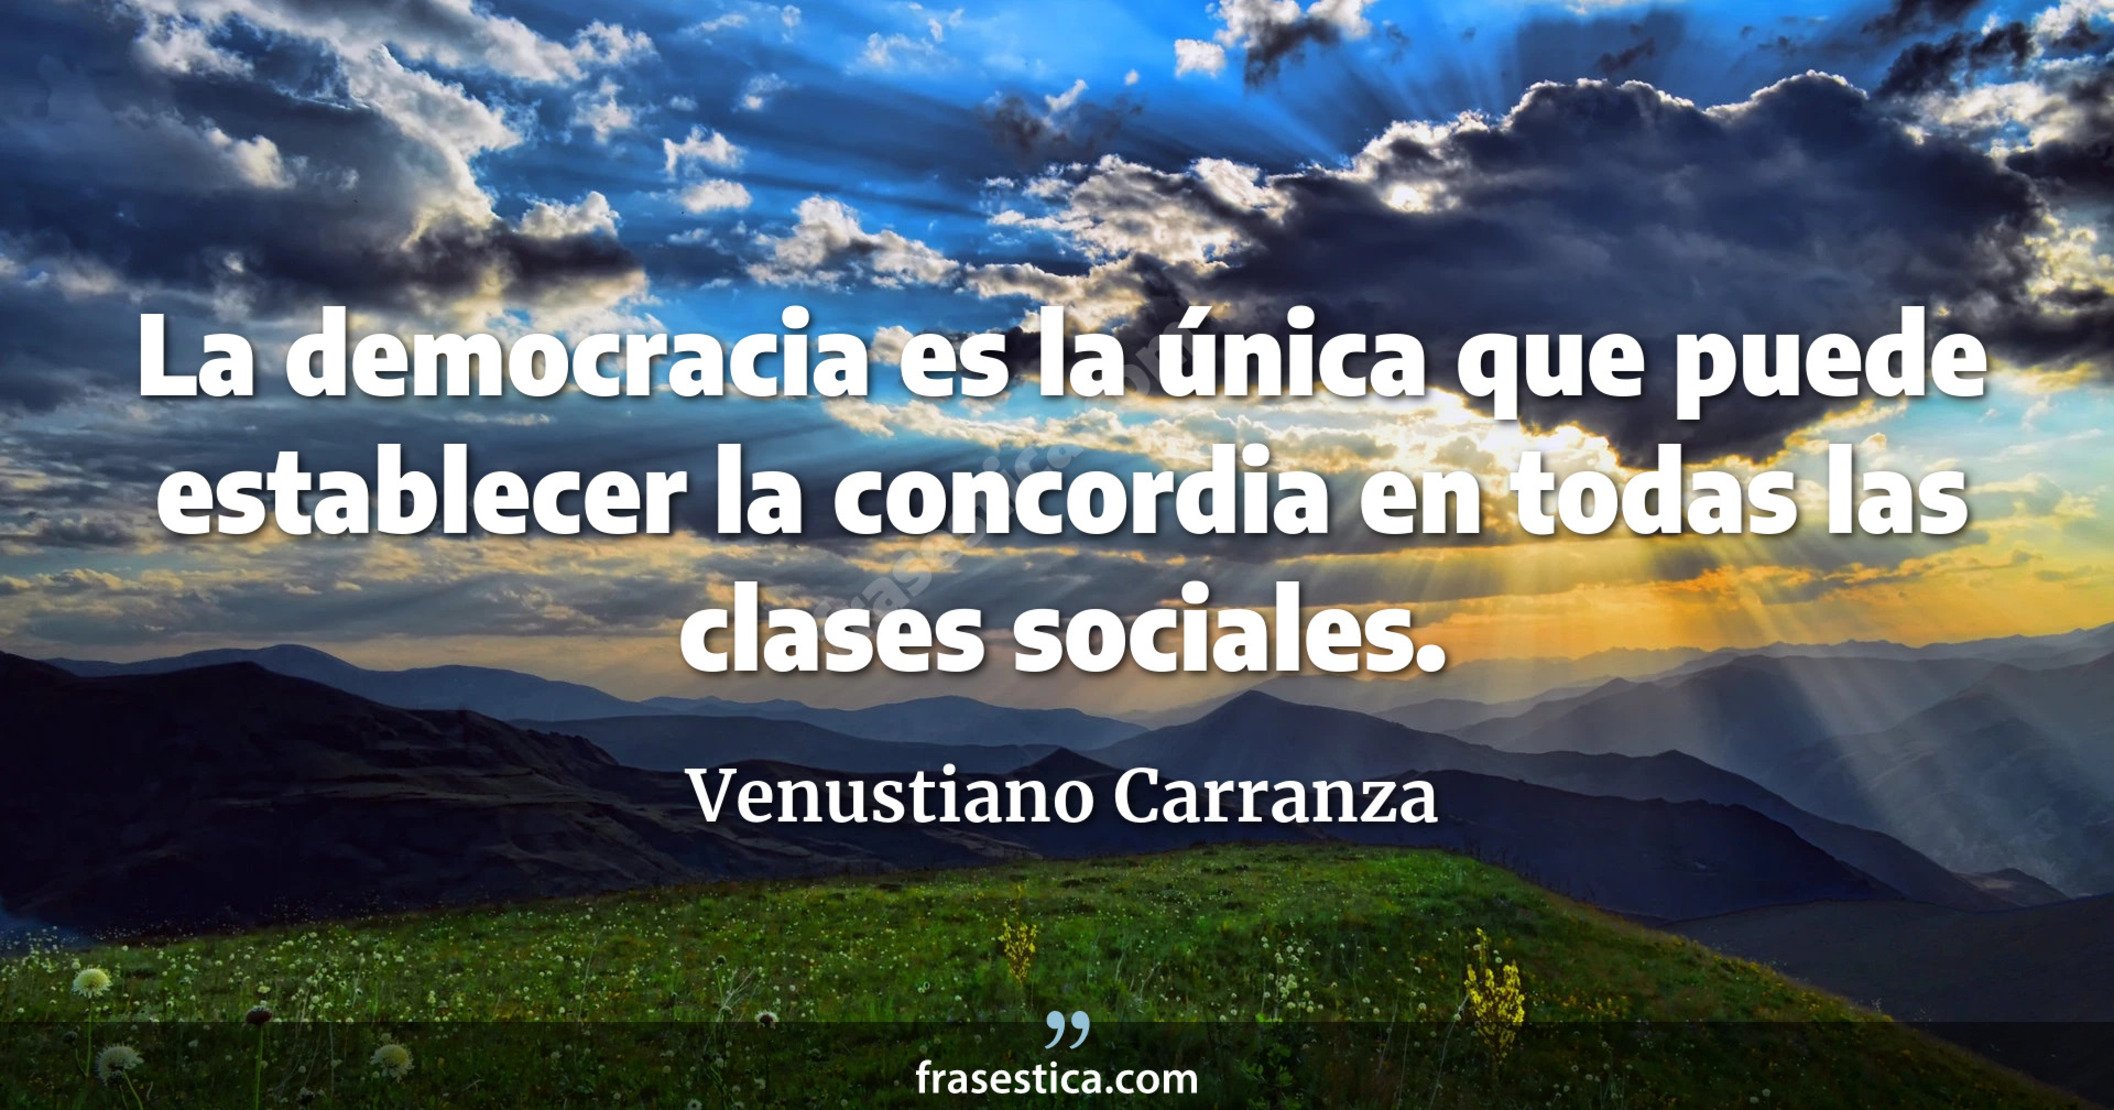 La democracia es la única que puede establecer la concordia en todas las clases sociales. - Venustiano Carranza